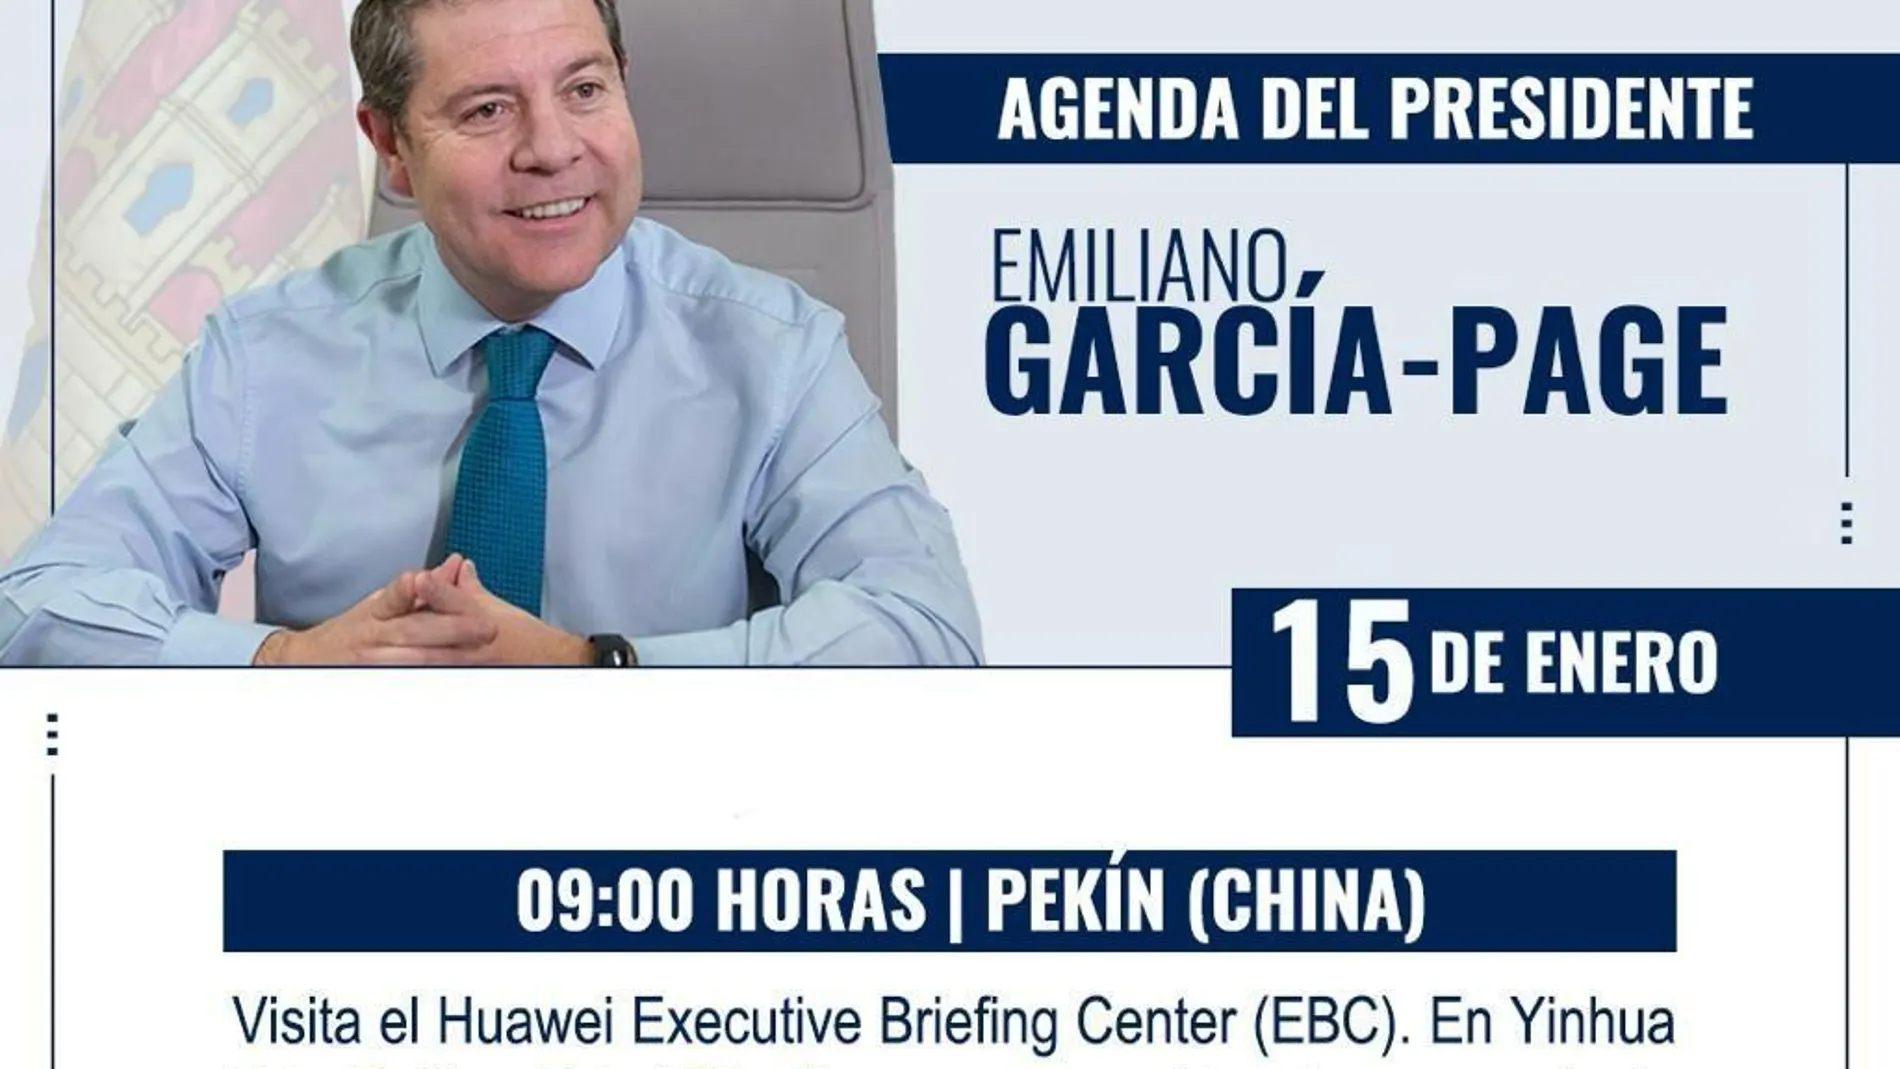 Agenda de Emiliano García-Page para el 15 de enero